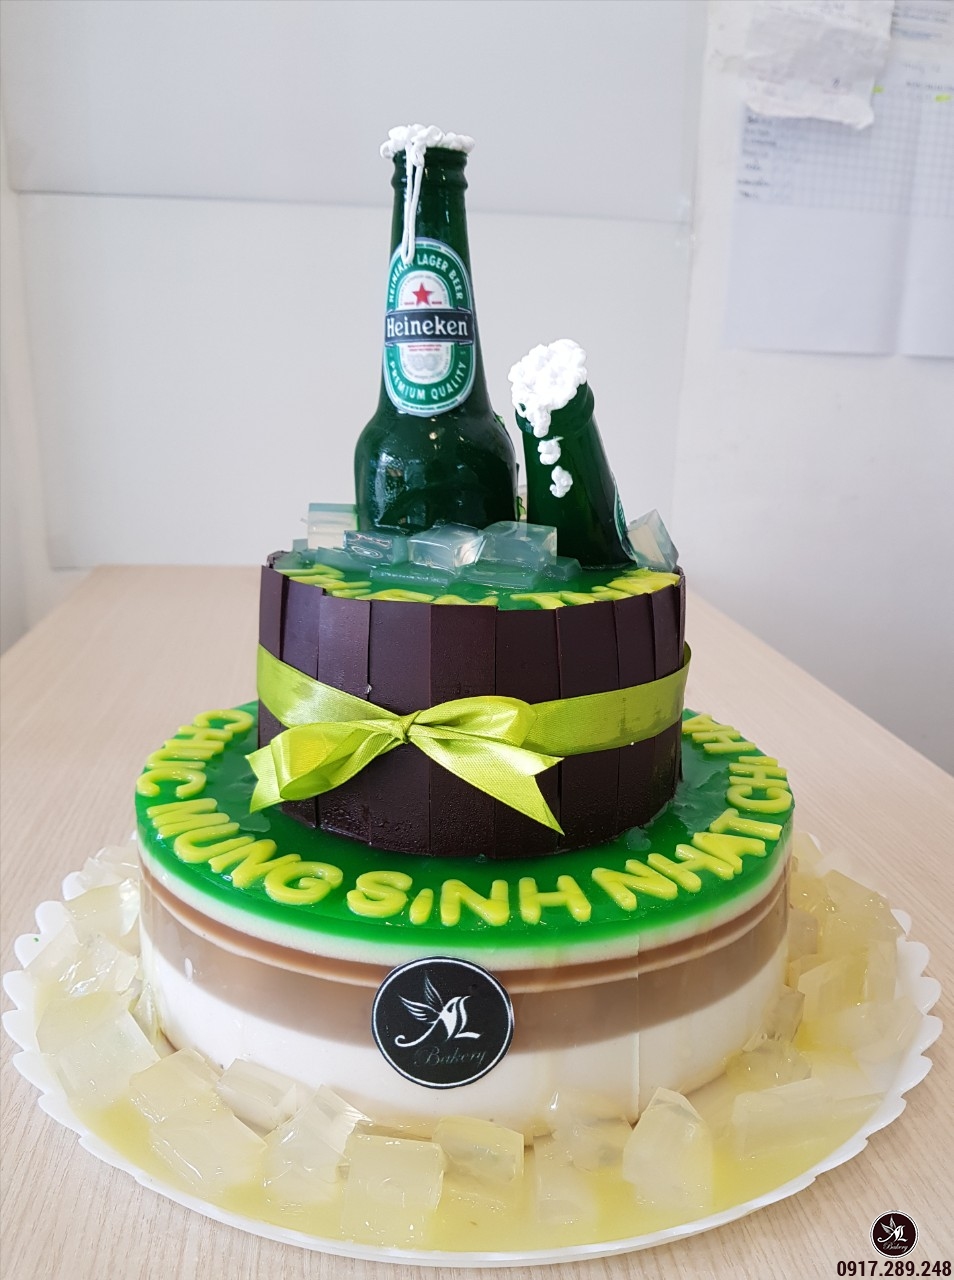 Bánh sinh nhật hình lon bia Heineken độc đáo  Bánh kem cao cấp